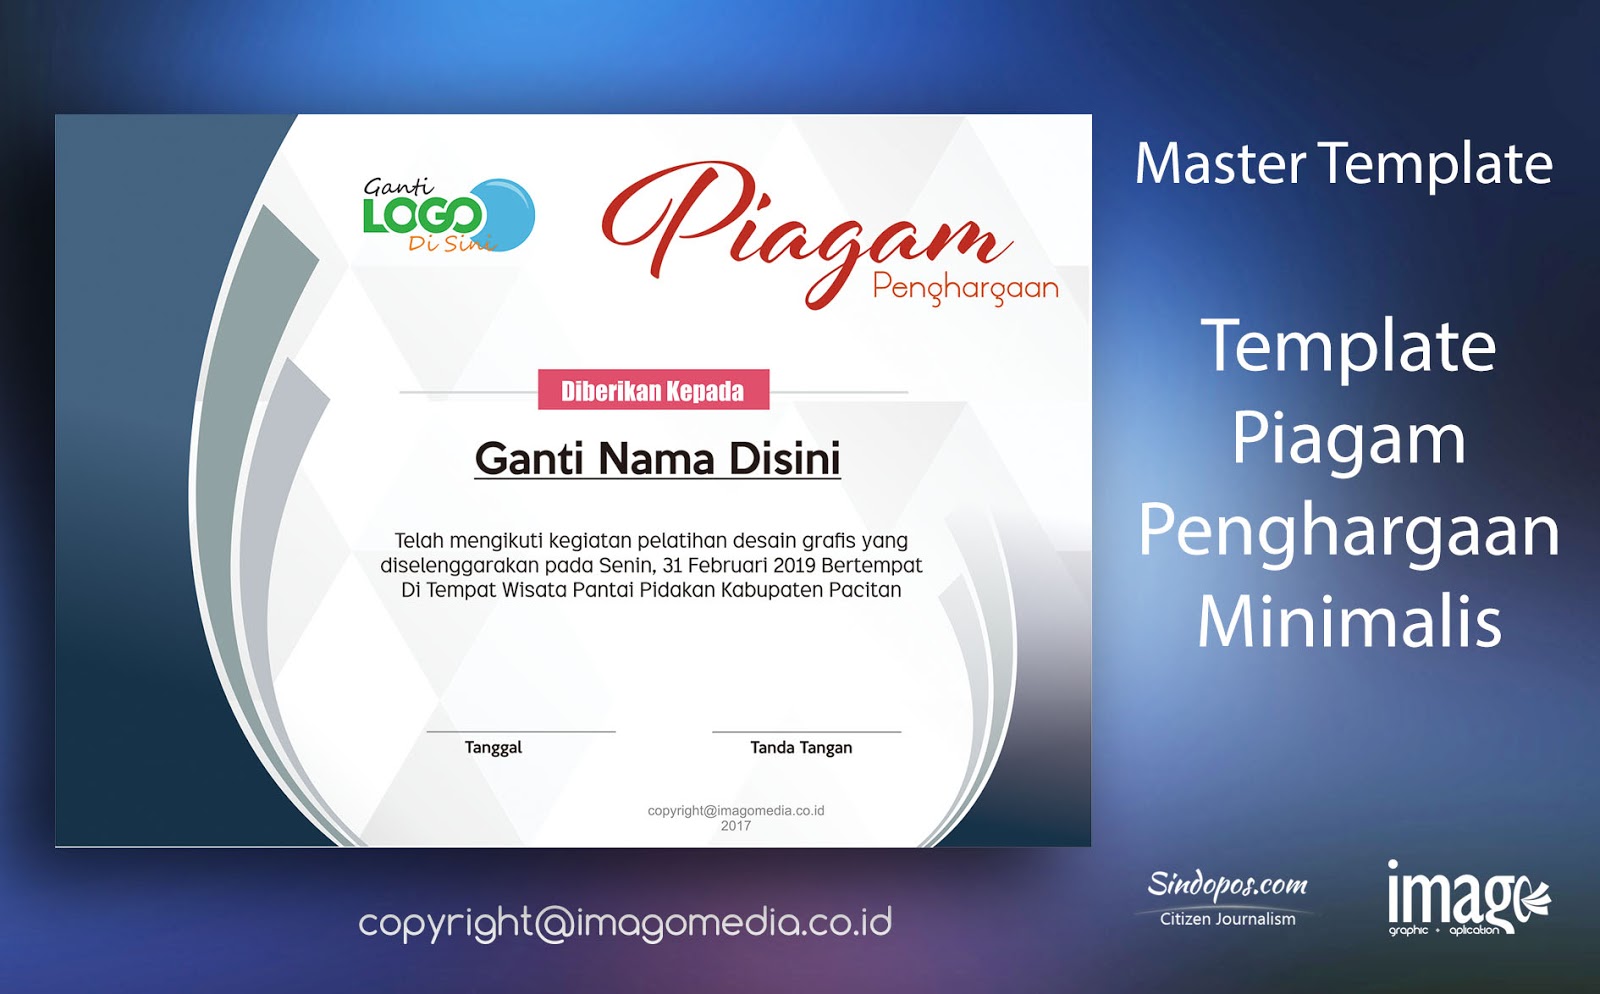 Download Template Piagam Penghargaan Minimalis  Imago Media